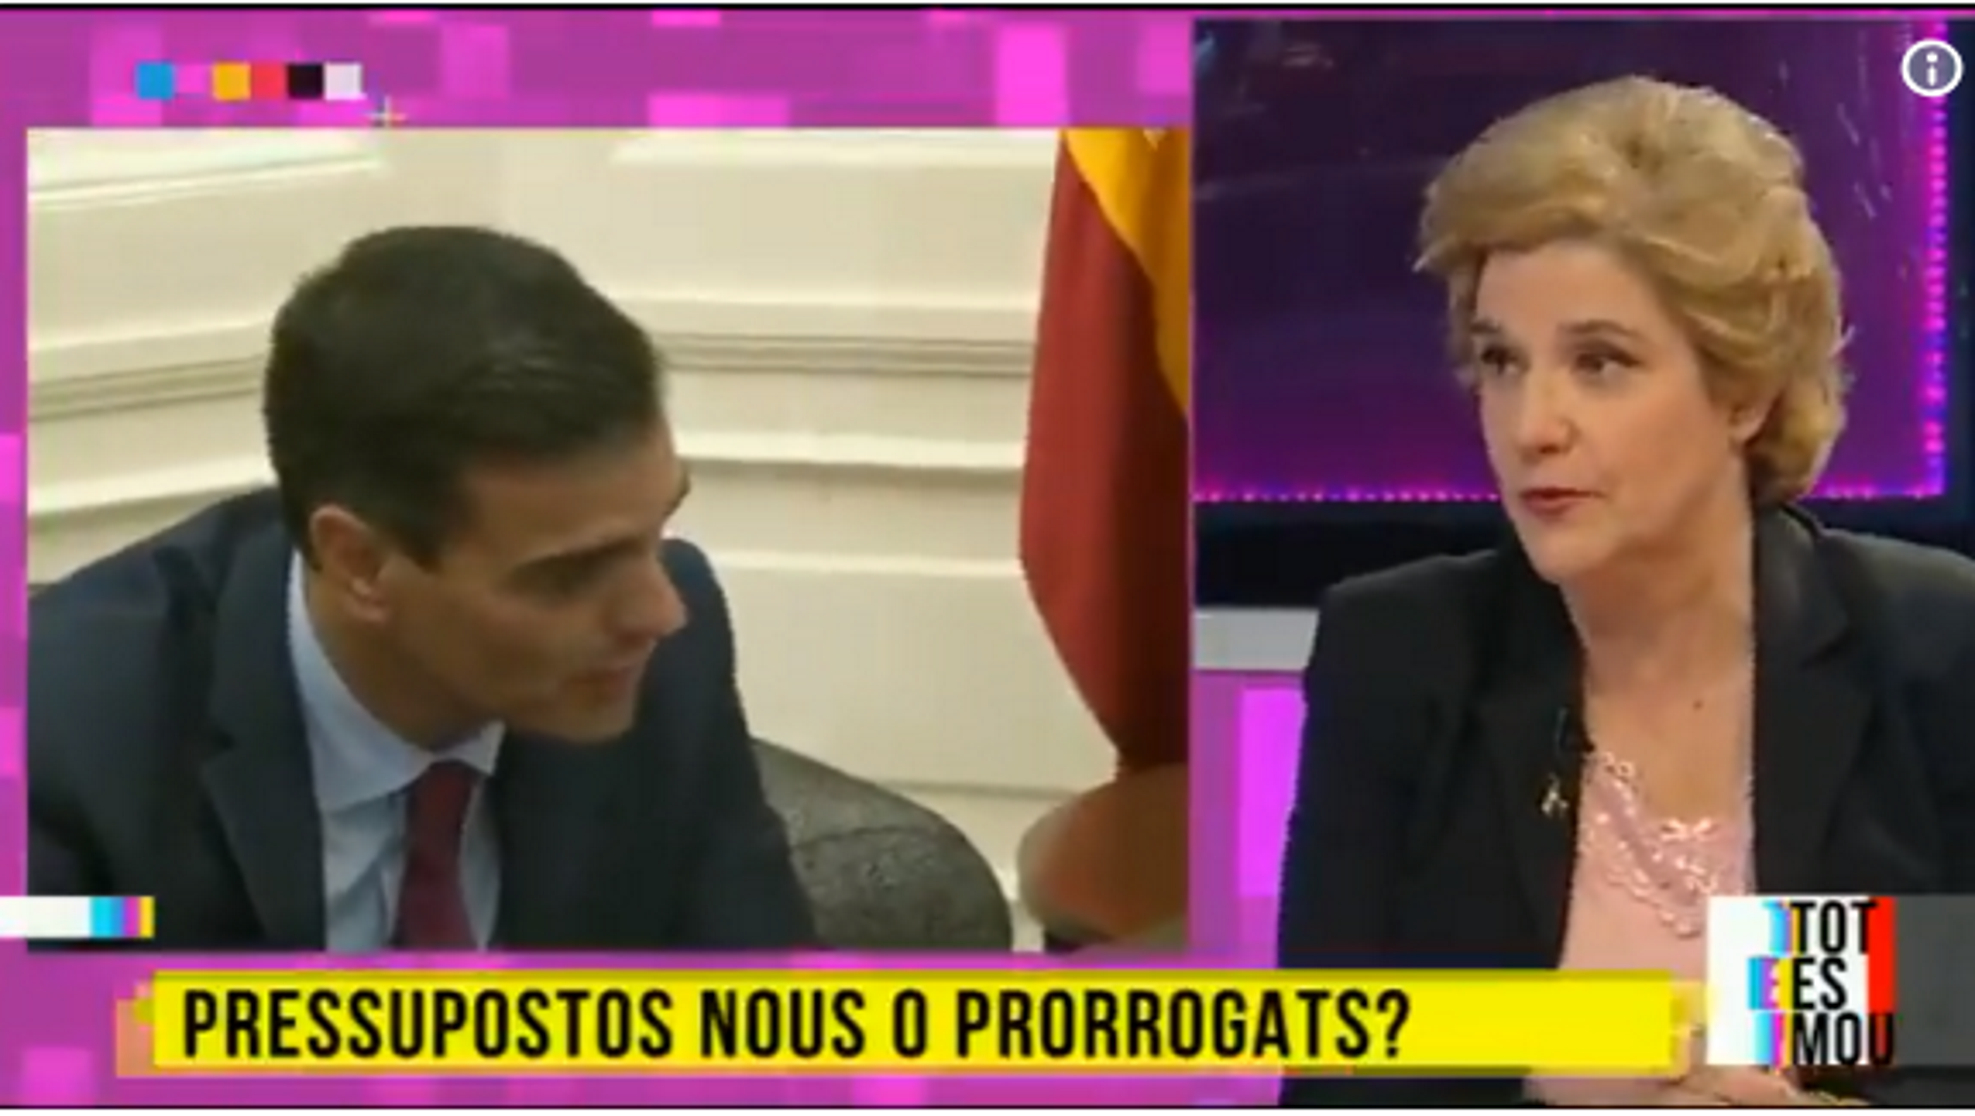 Rahola: "Hay mucho malestar y Torra y Puigdemont tienen una posición dura con los presupuestos"